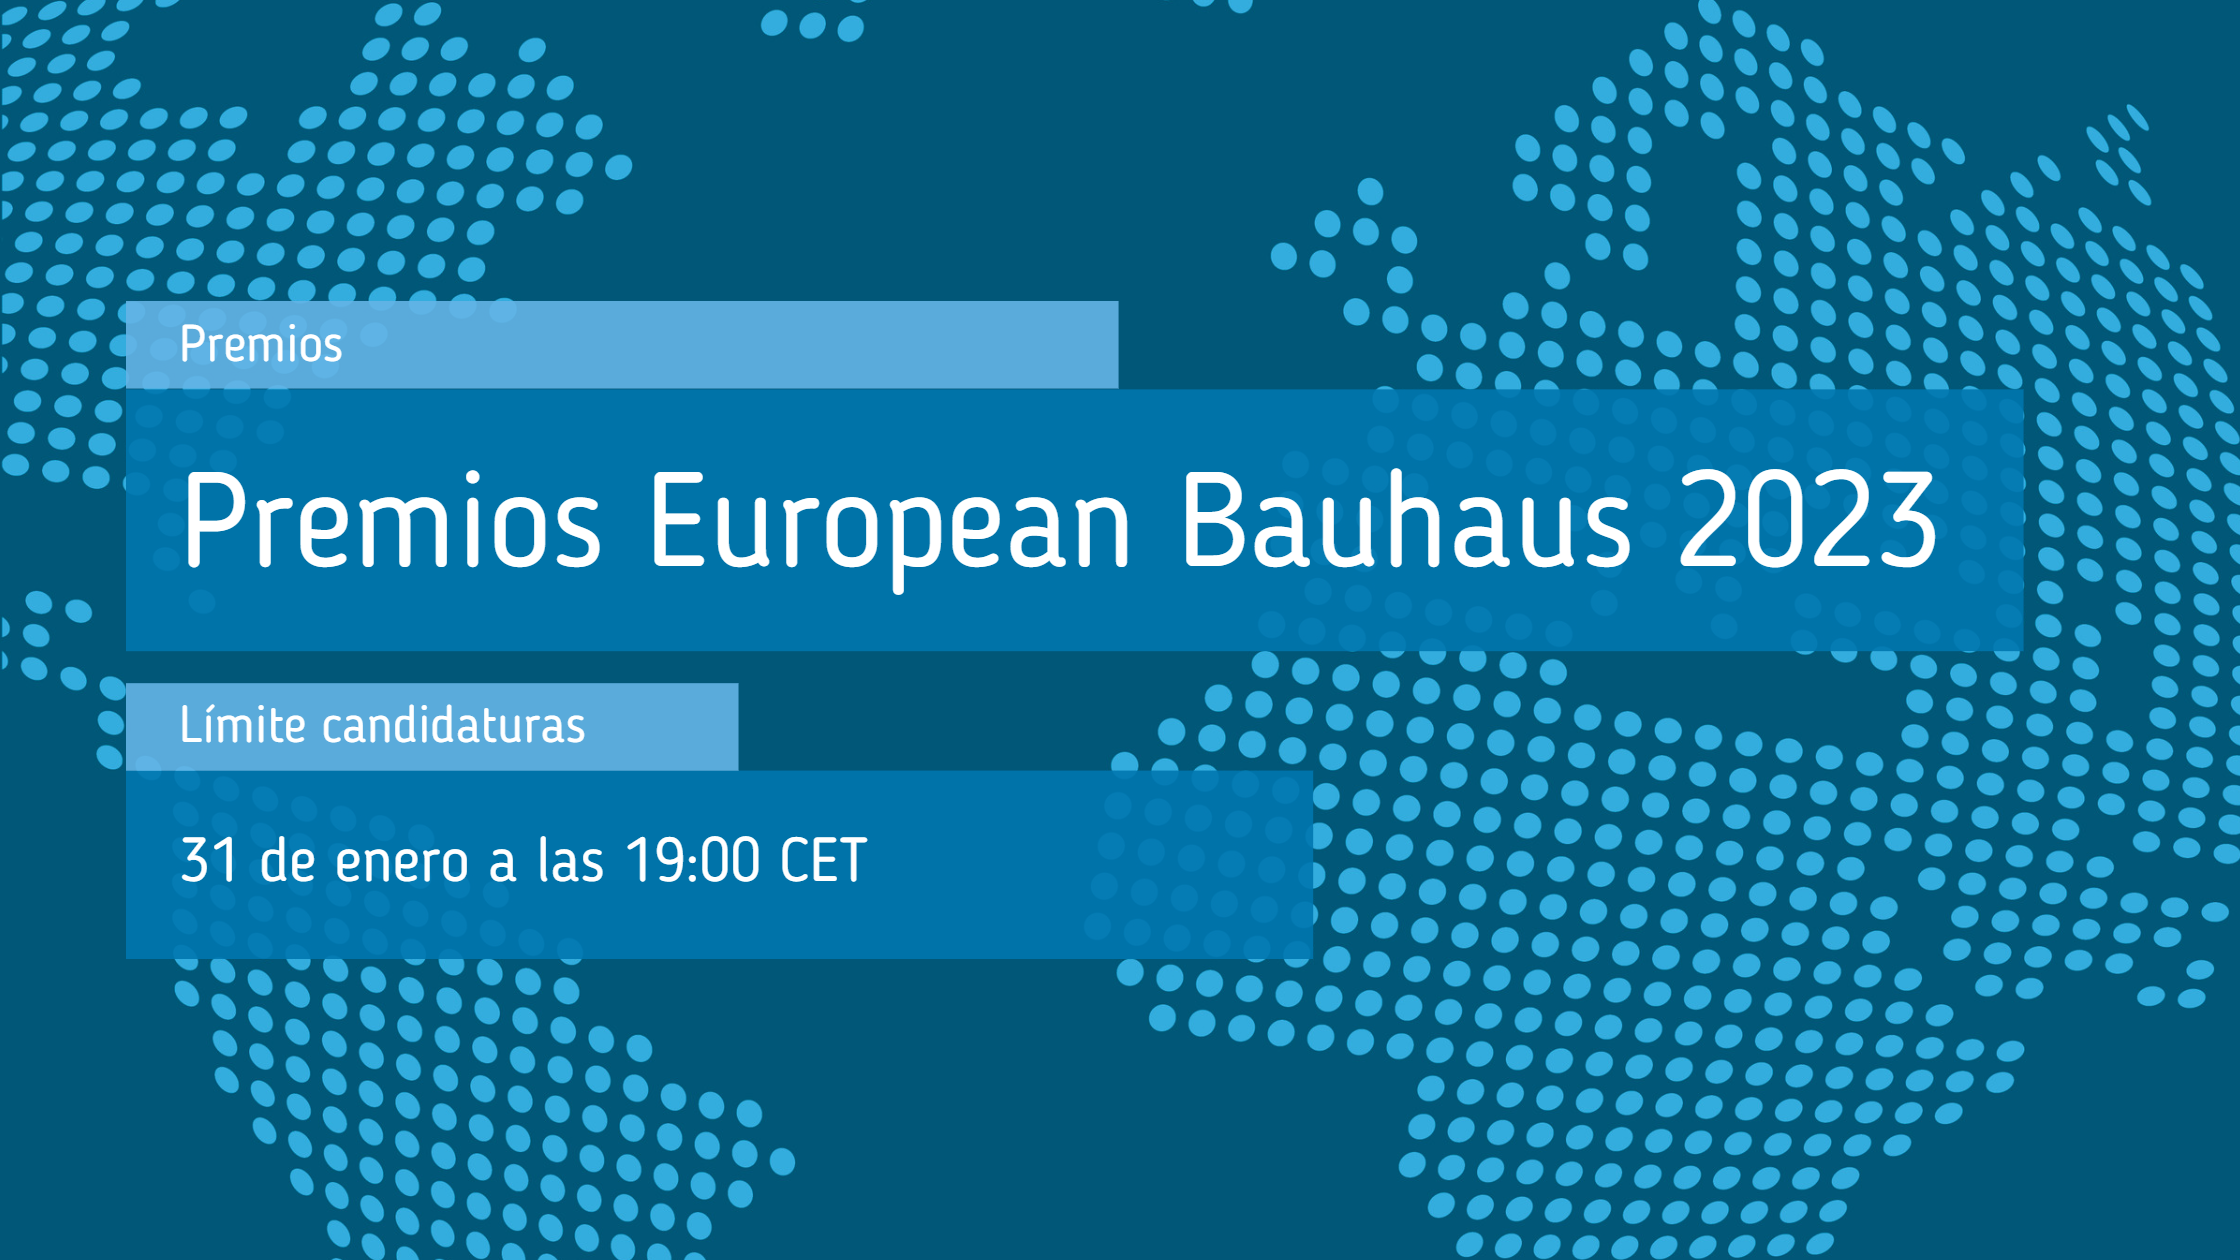 Premios_European_Bauhaus_2023